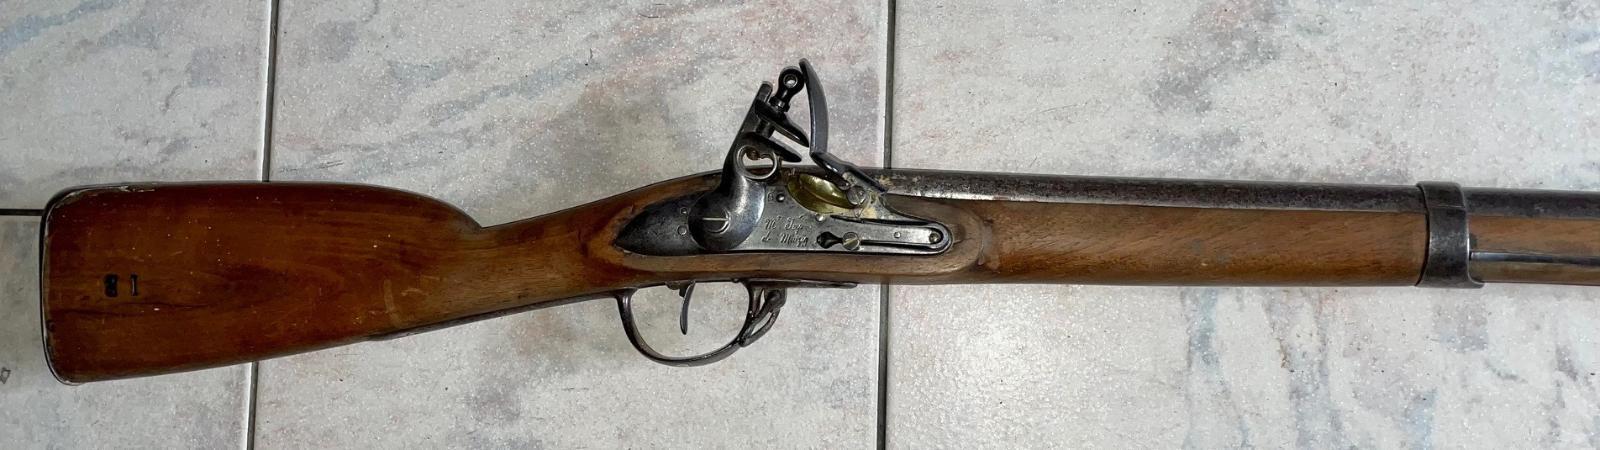 Francouzská křesadlová puška z období císaře Napoleona, s bodákem - Sběratelské zbraně